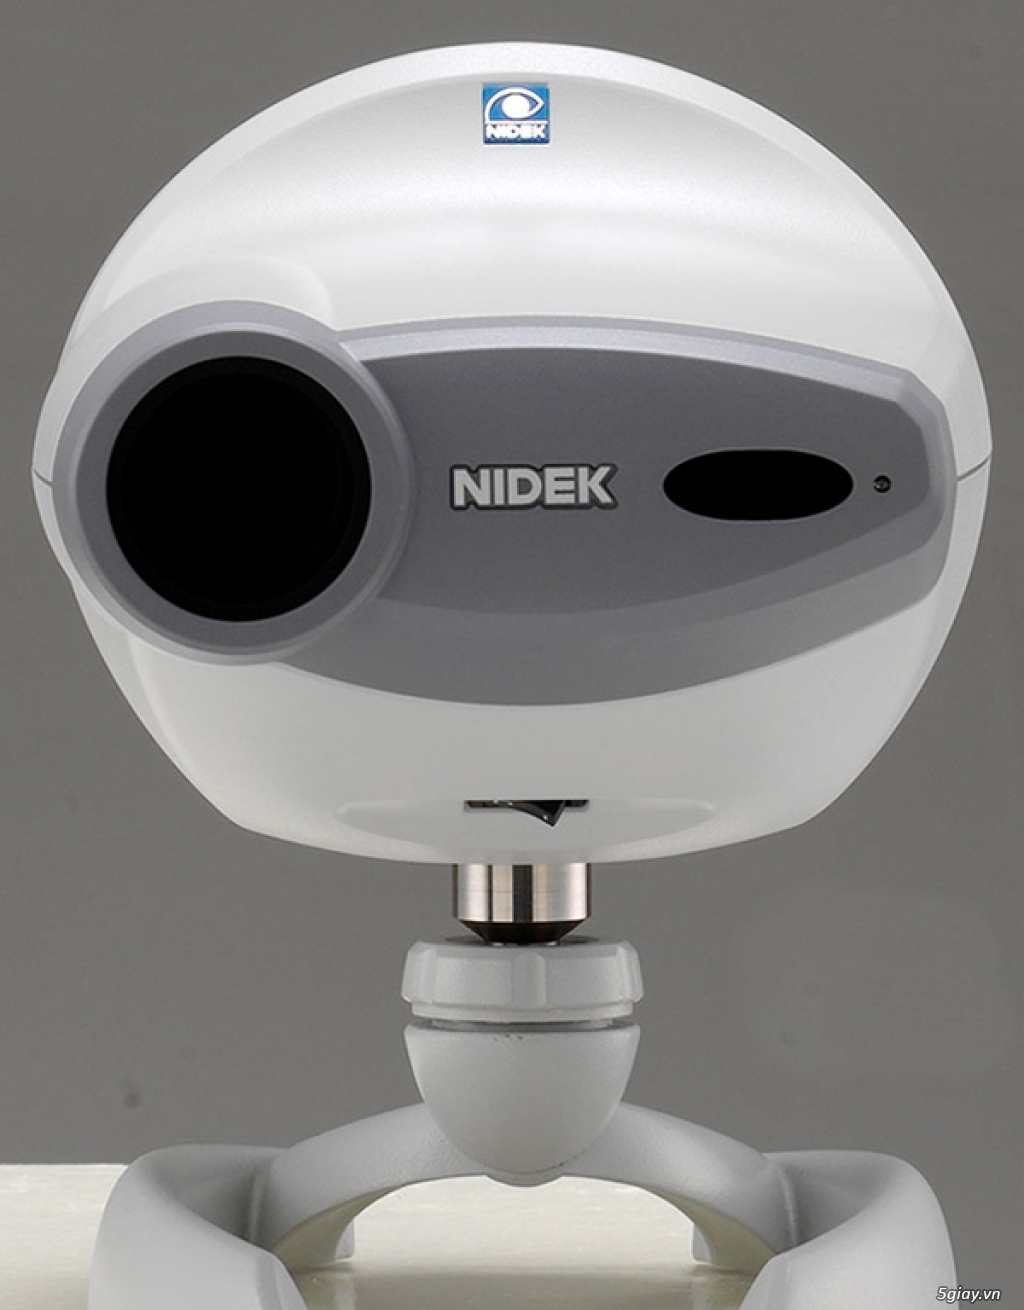 Nidek máy đo khúc xạ, máy chiếu chính hãng - 2